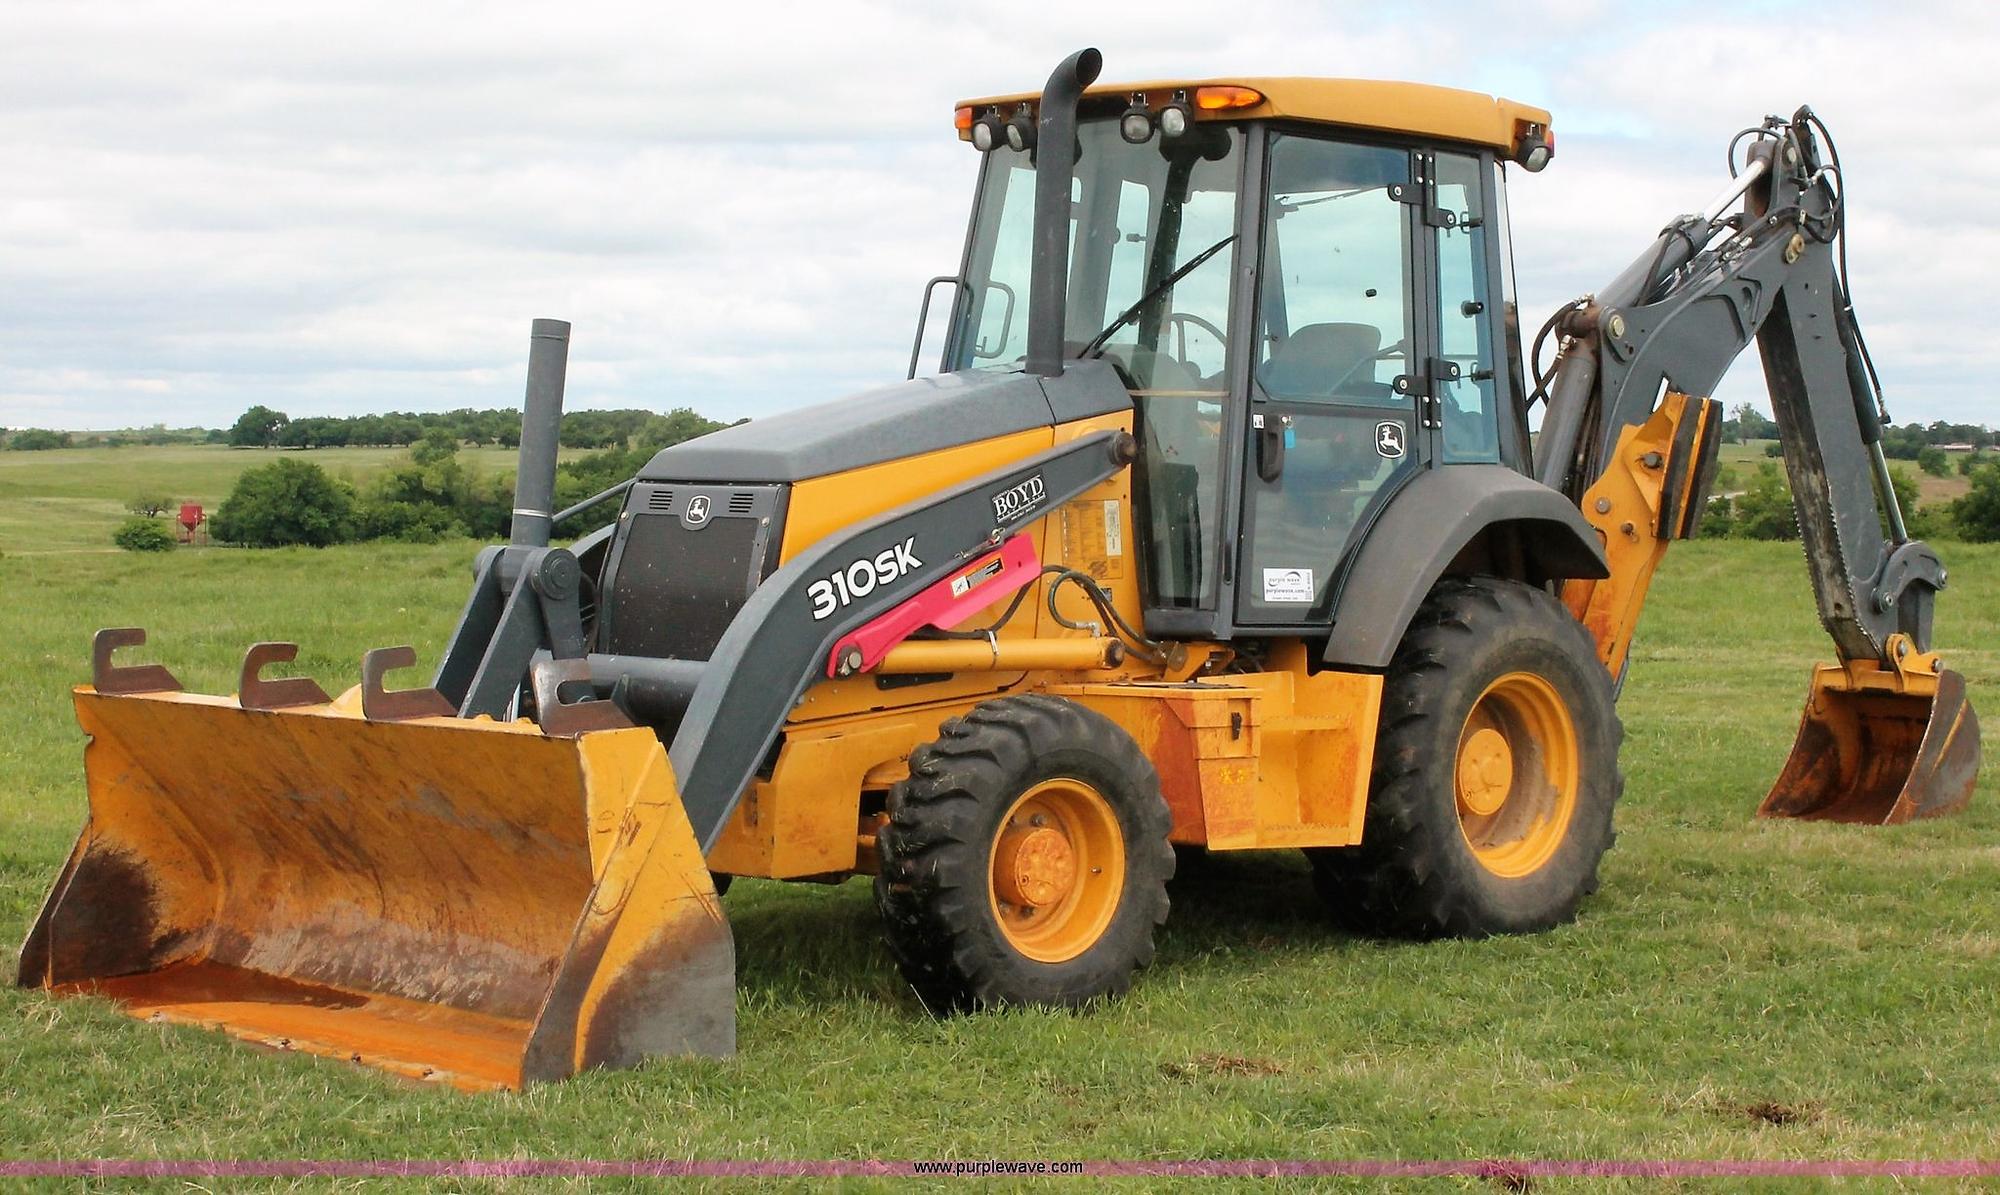 Backhoe tractor stolen in Vankleek Hill